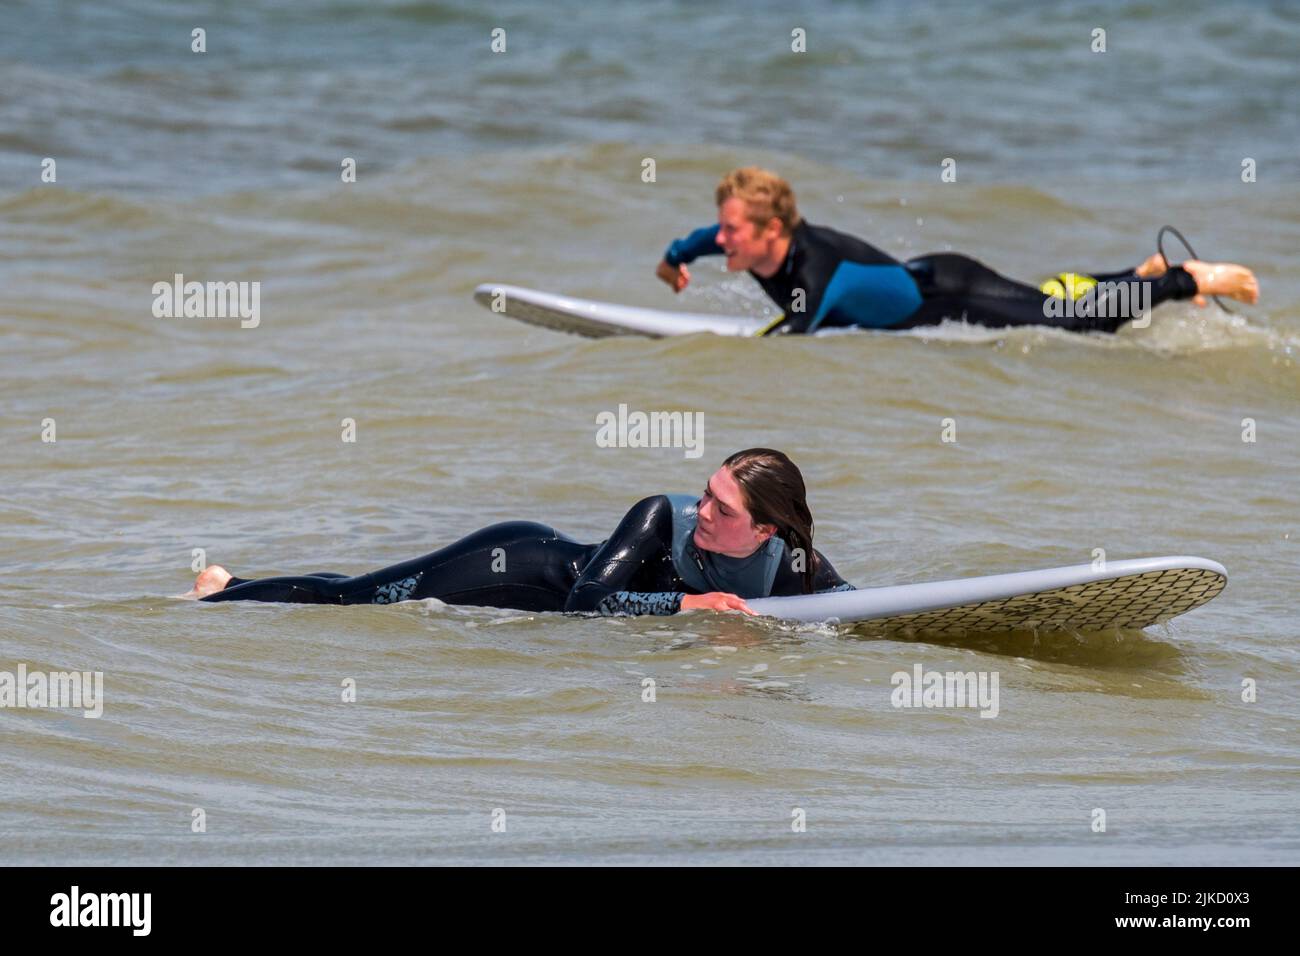 Weibliche Surferin im Neoprenanzug liegt und wartet auf ihrem Surfbrett auf eine große Welle / Breaker, um entlang der Nordseeküste zu surfen Stockfoto